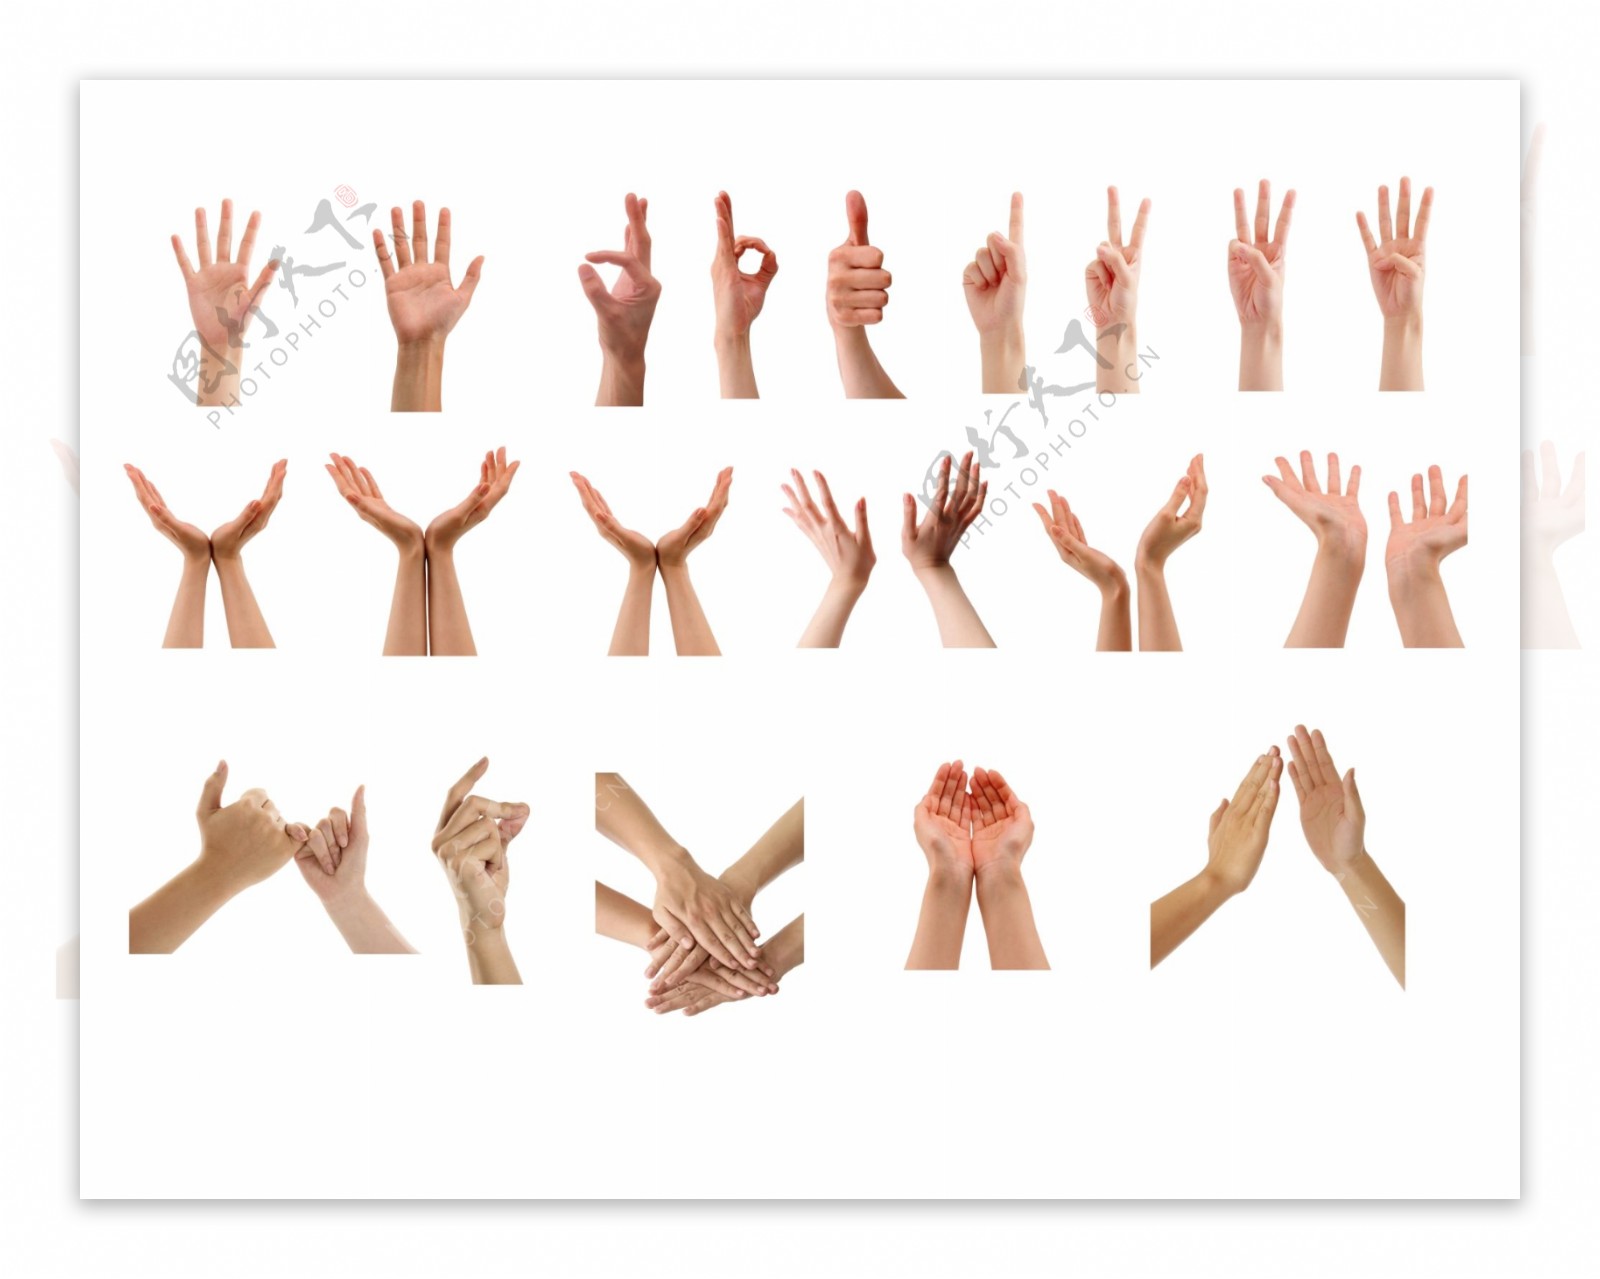 勾手指的手掌手部動作, 手腕, 手指頭, 工作素材圖案，PSD和PNG圖片免費下載